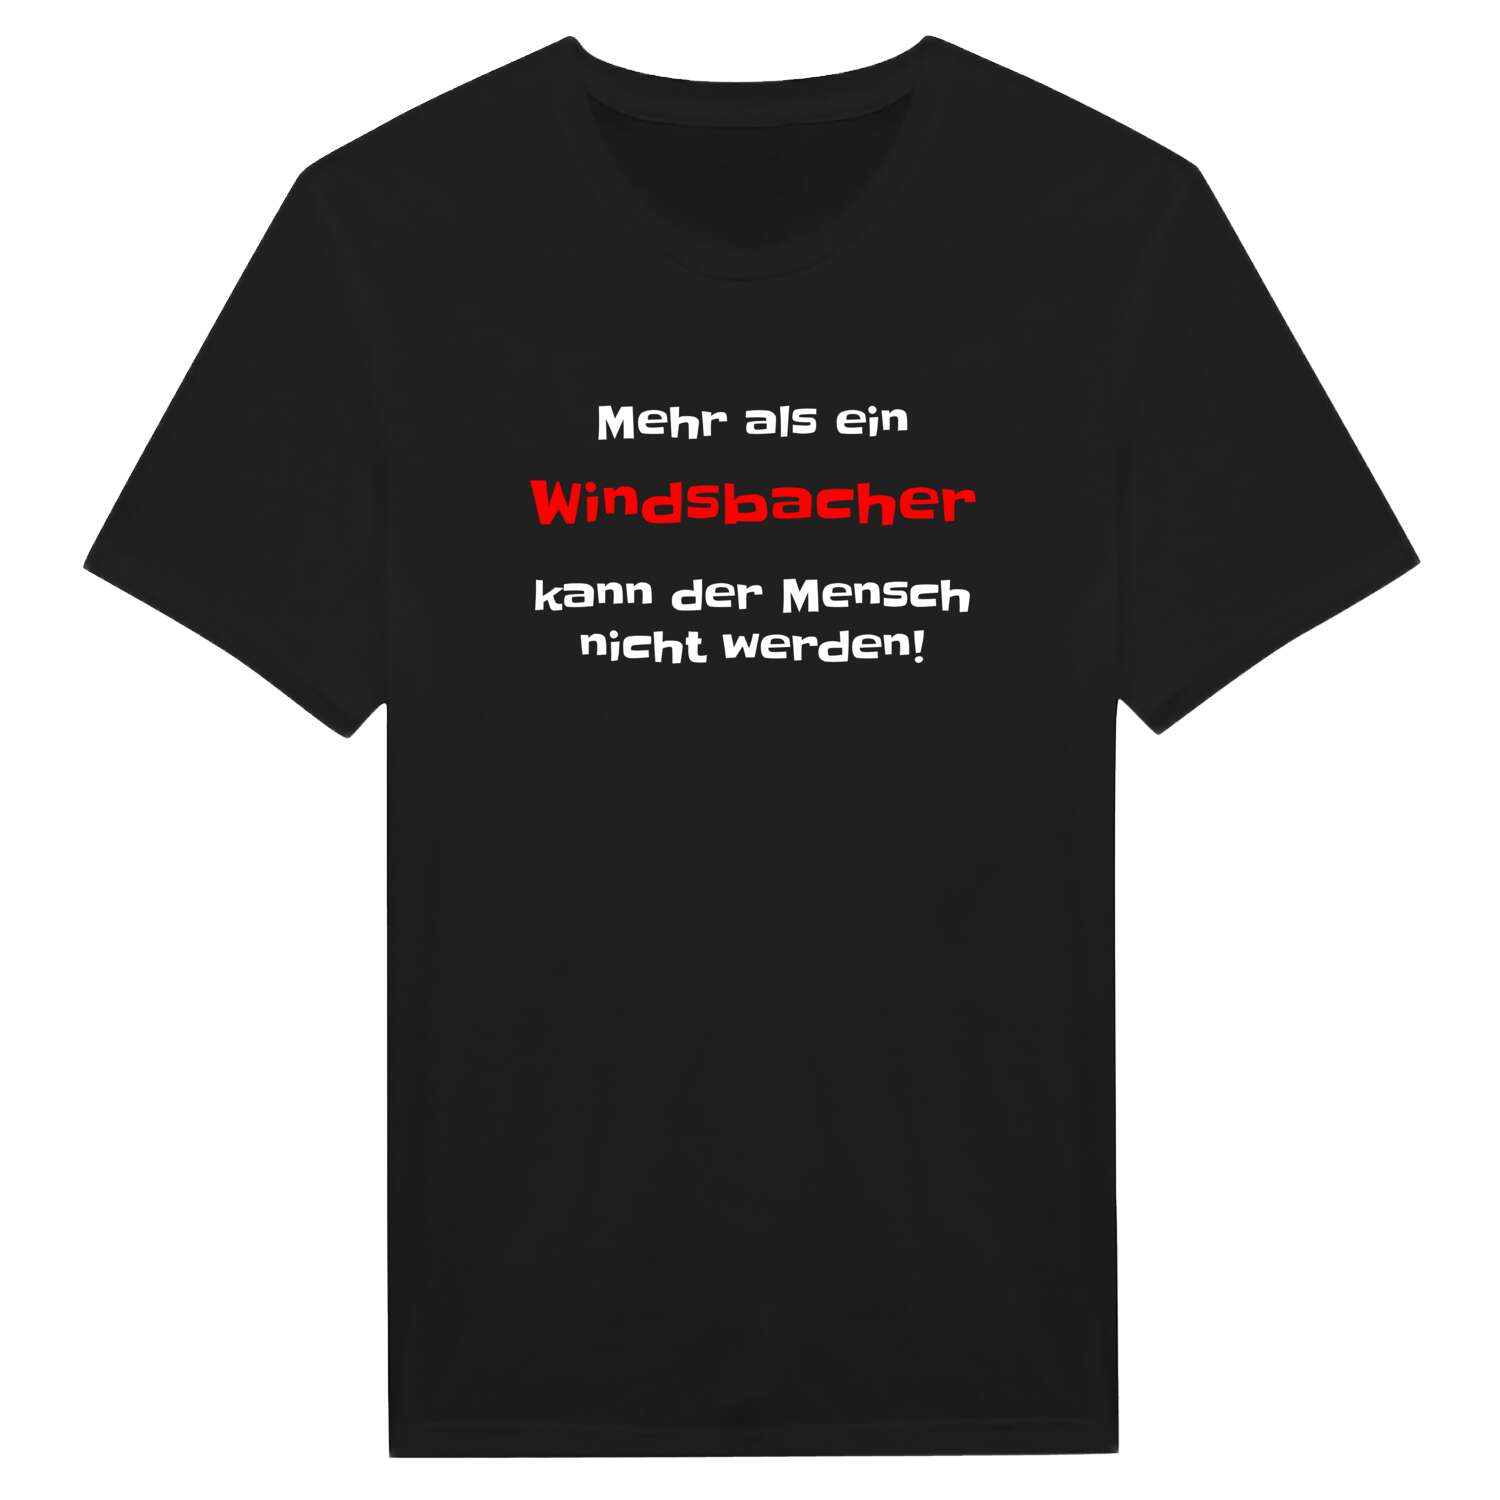 Windsbach T-Shirt »Mehr als ein«